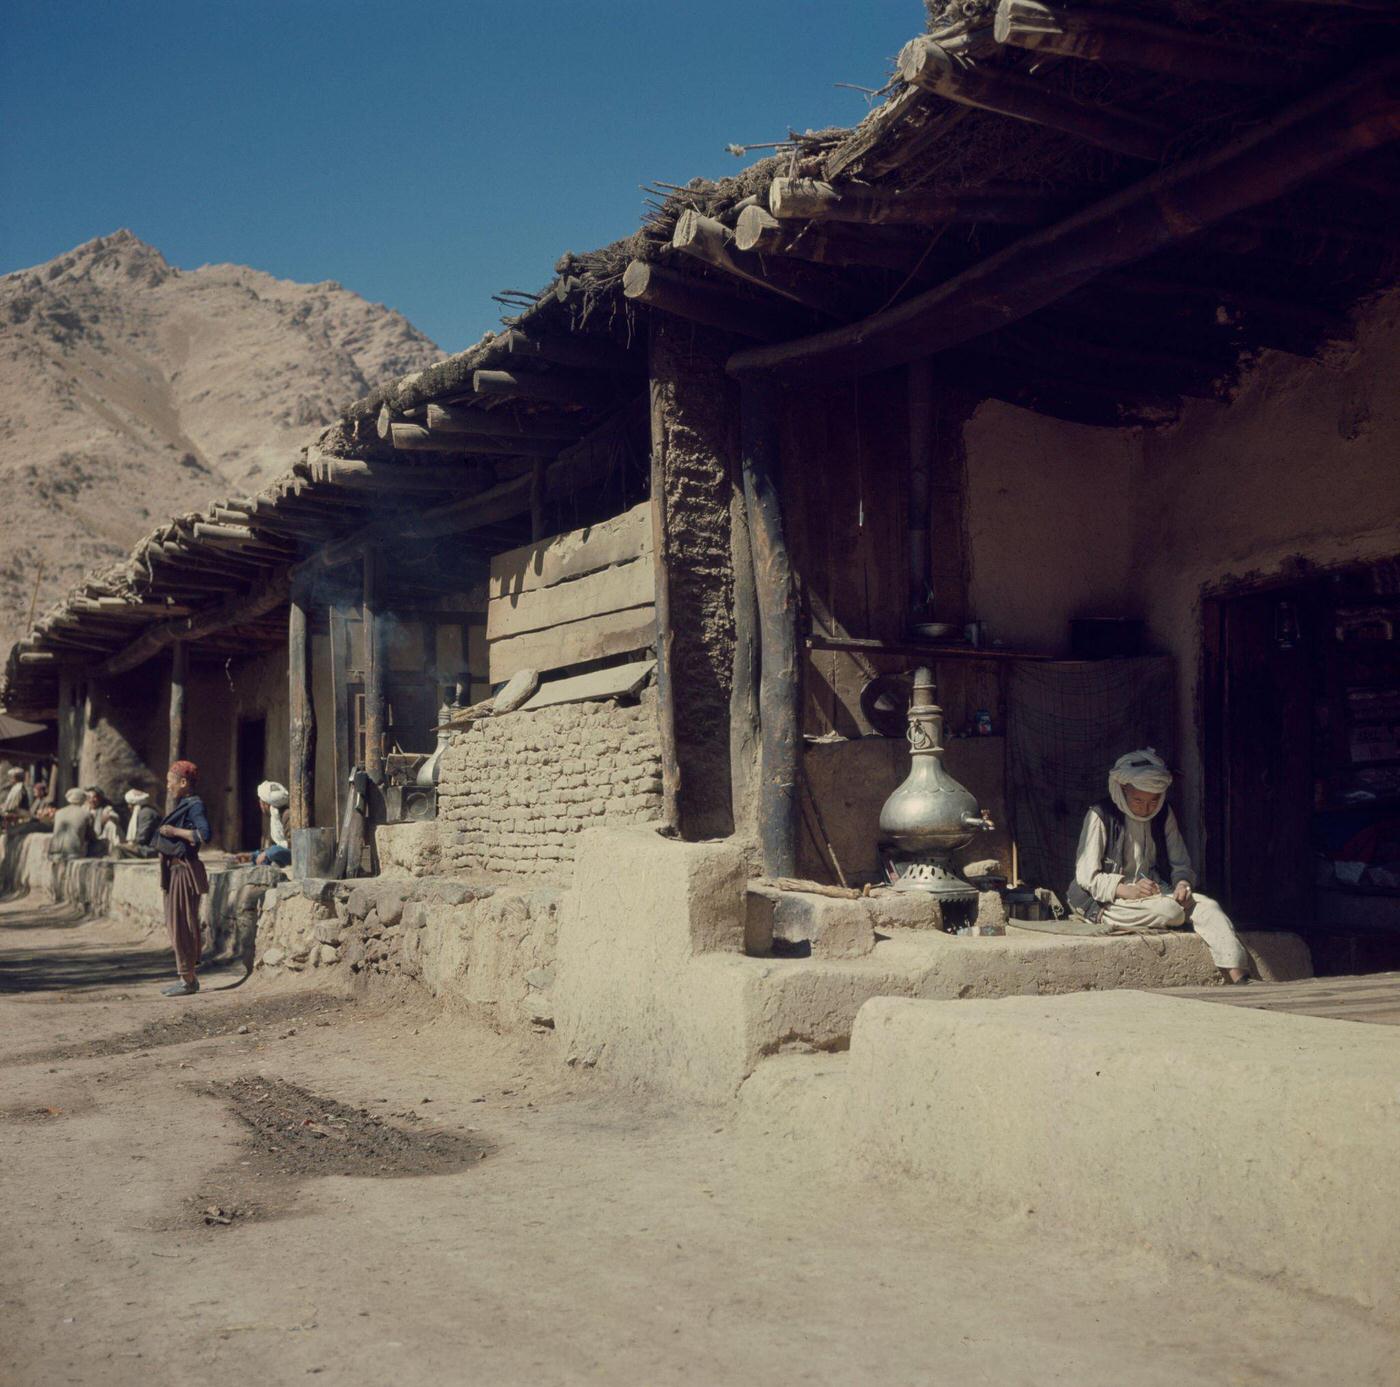 Street scene in a village in Afghanistan, 1950s